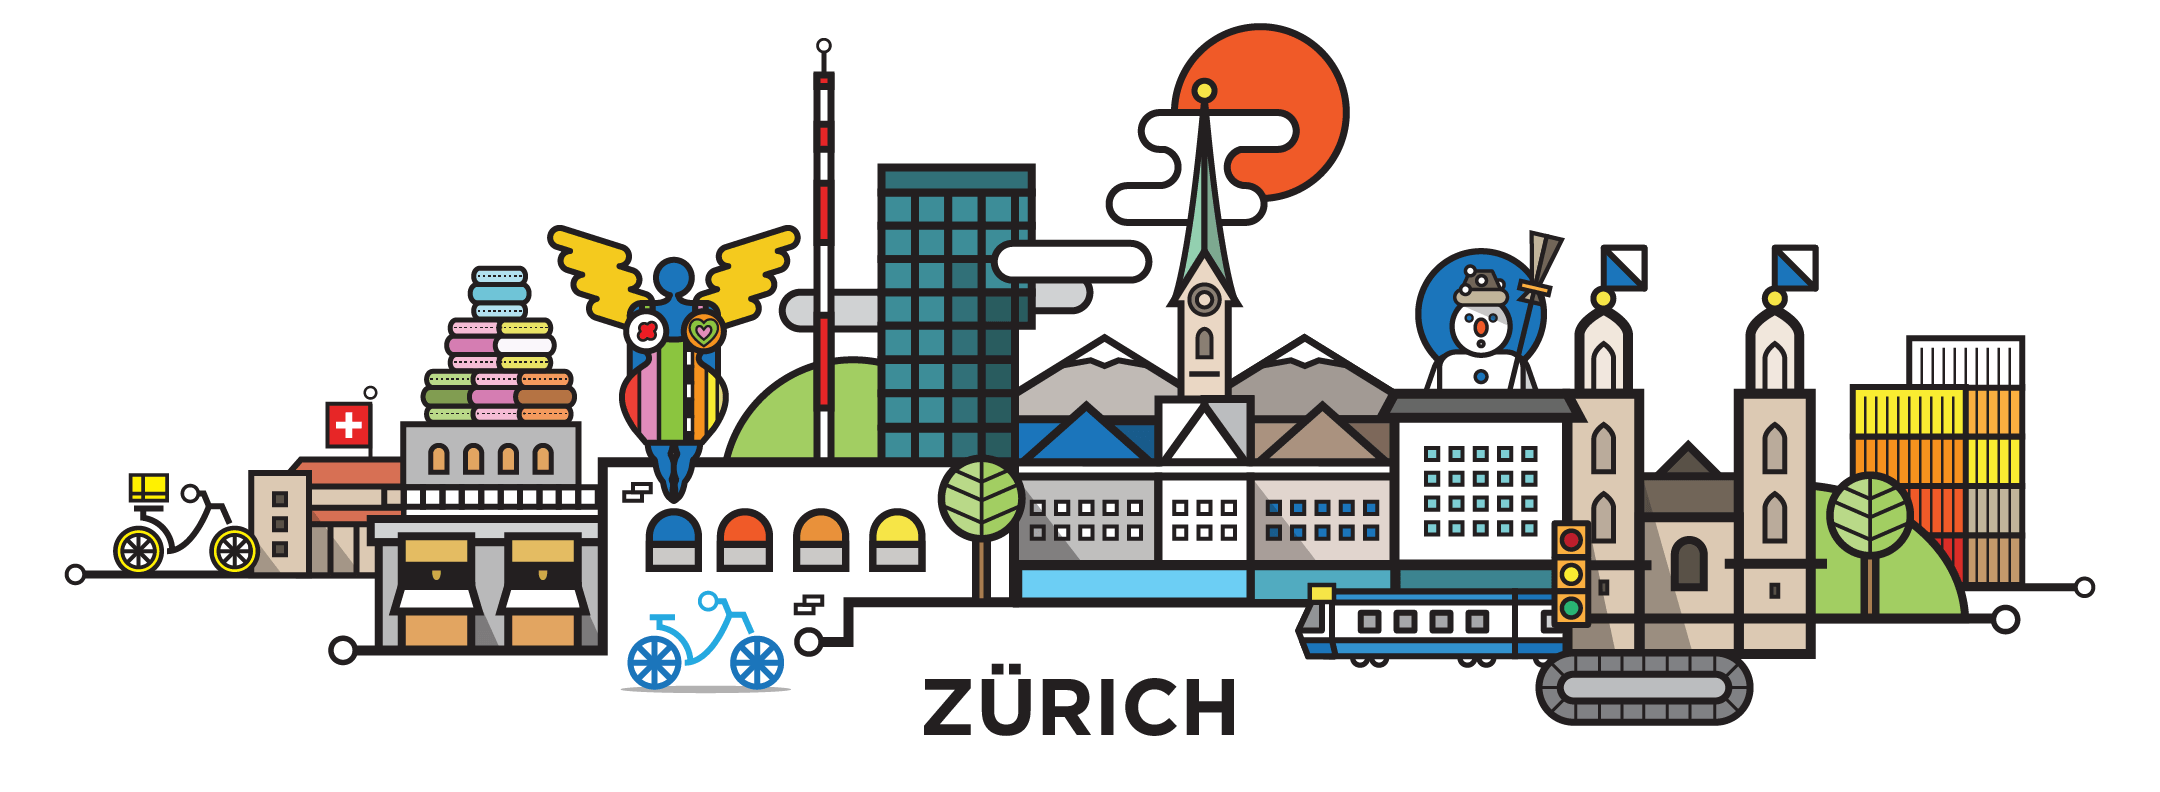 zurich-cityline-illustration-by-loogart